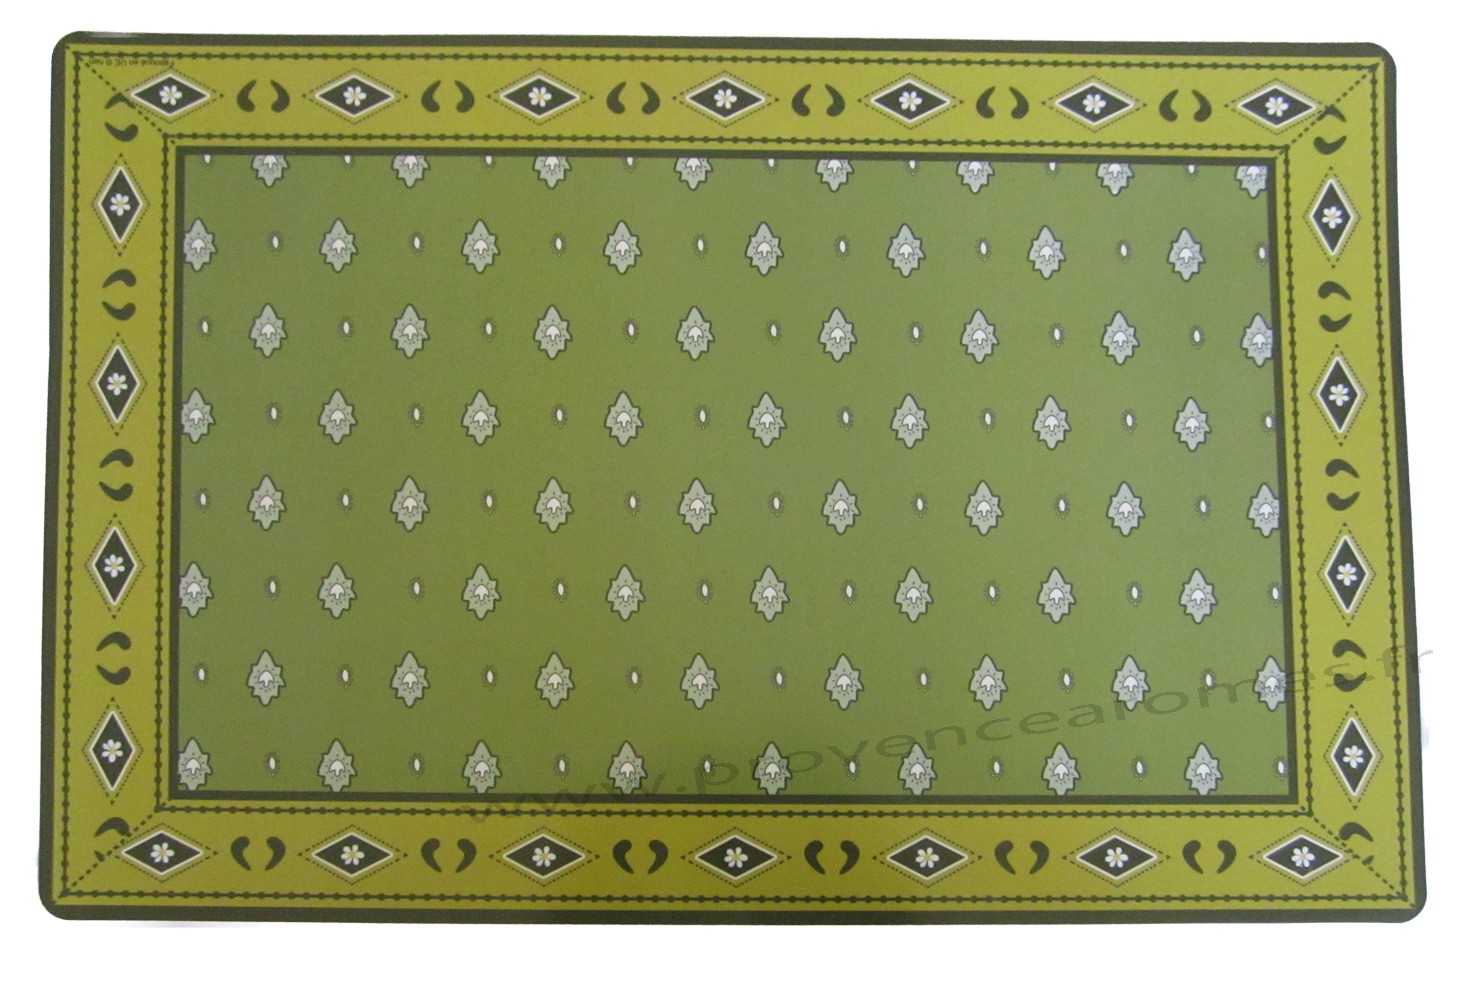 set de table pvc style tissus provencale authentique mouche vert olive provence aromes tendance sud